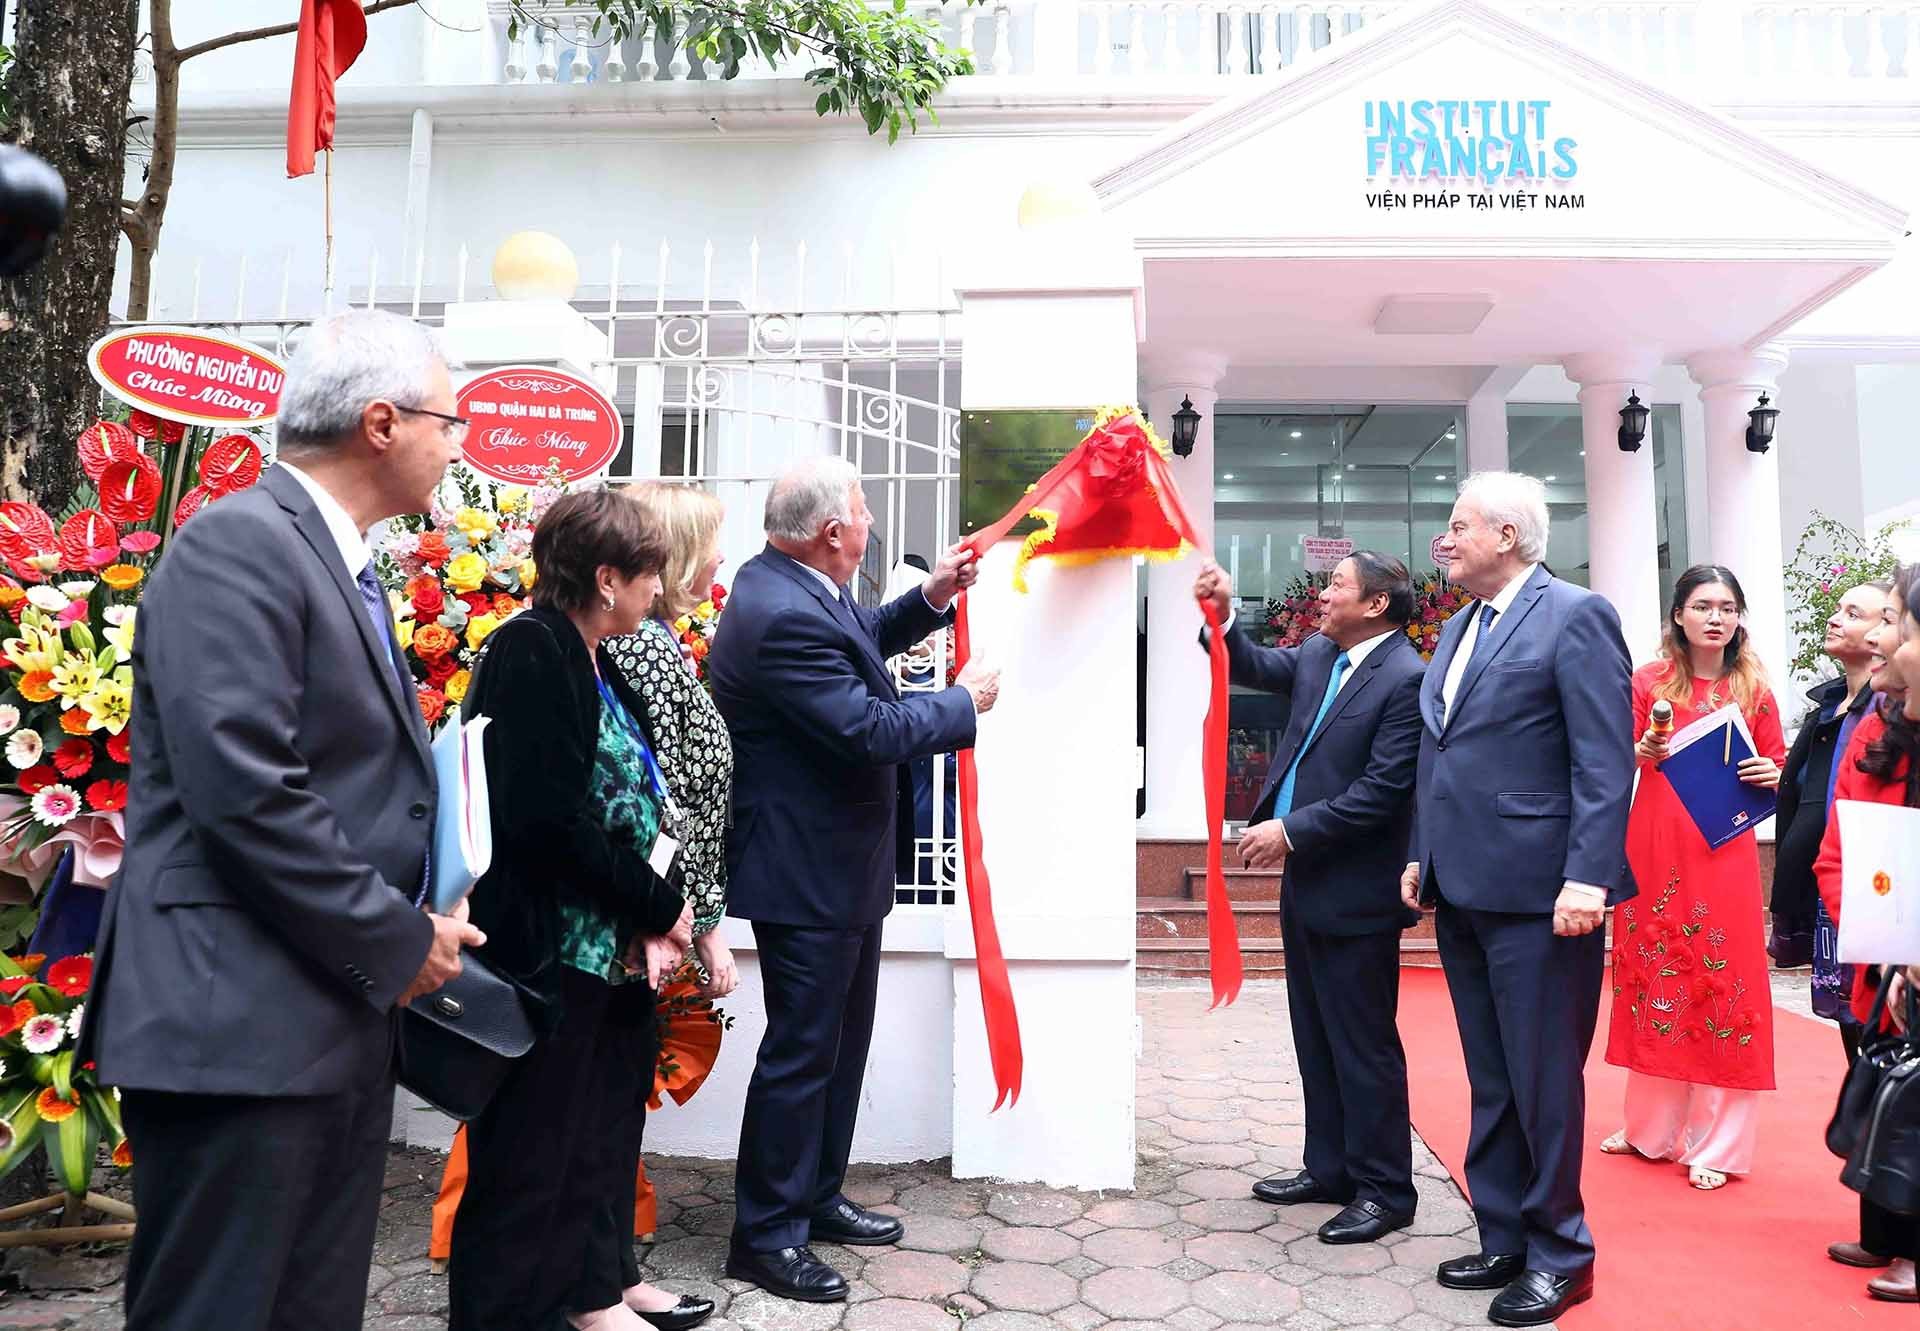 Chủ tịch Thượng viện Cộng hòa Pháp Gérard Larcher và Bộ trưởng Bộ Văn hoá, Thể thao và Du lịch Nguyễn Văn Hùng thực hiện nghi thức khai trương Viện Pháp tại Việt Nam. (Nguồn: TTXVN)